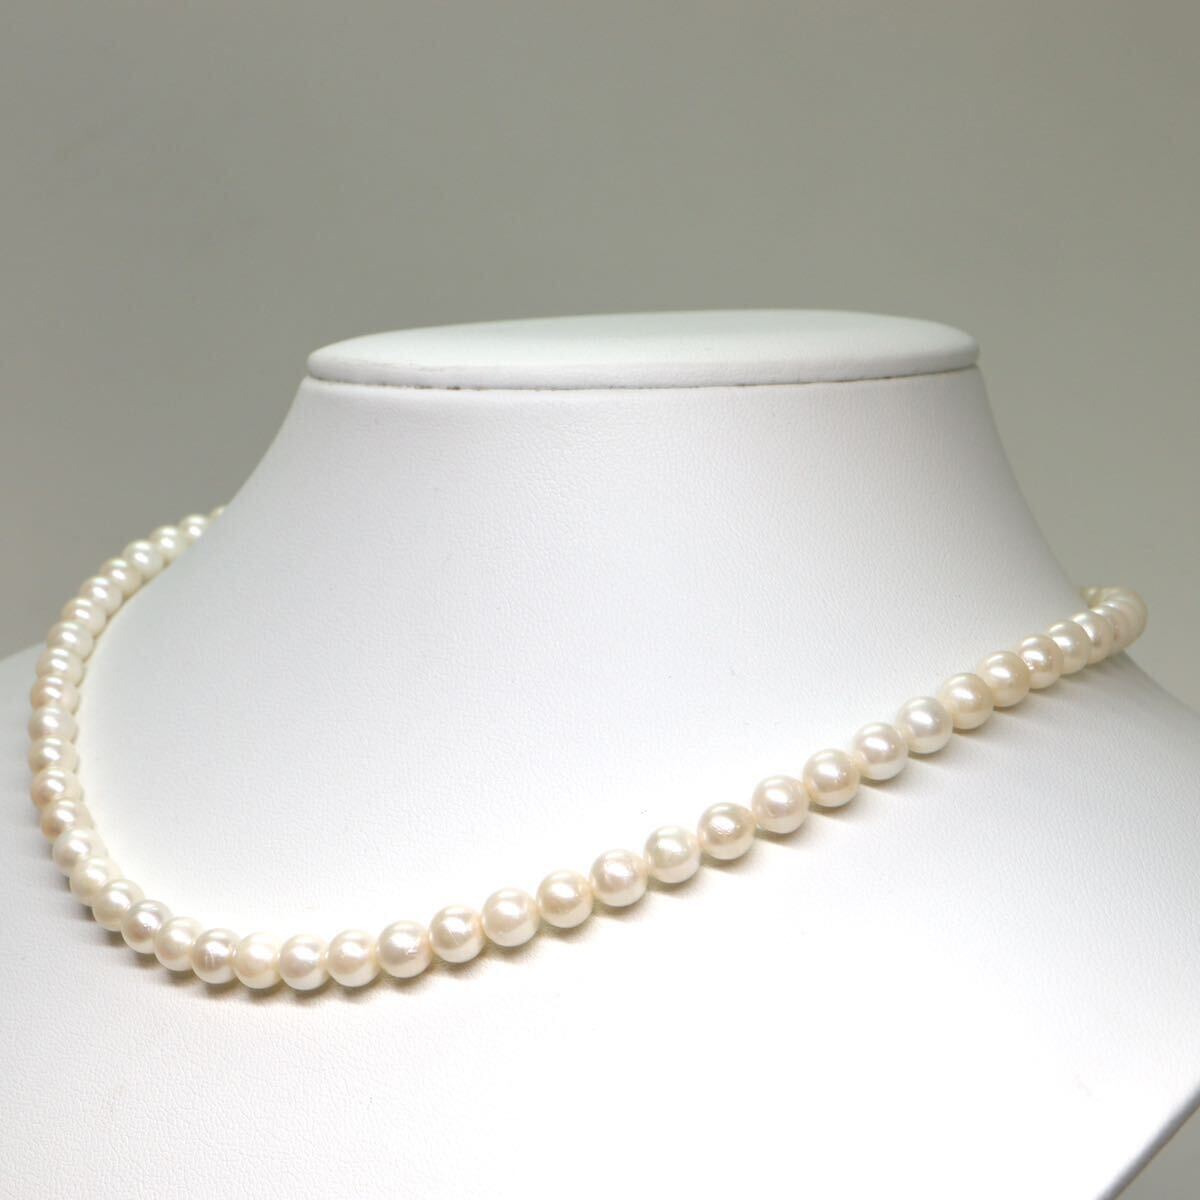 《アコヤ本真珠ネックレス》A 約5.5-6.0mm珠 21.8g 約41.5cm pearl necklace ジュエリー jewelry DA0/DC0の画像3